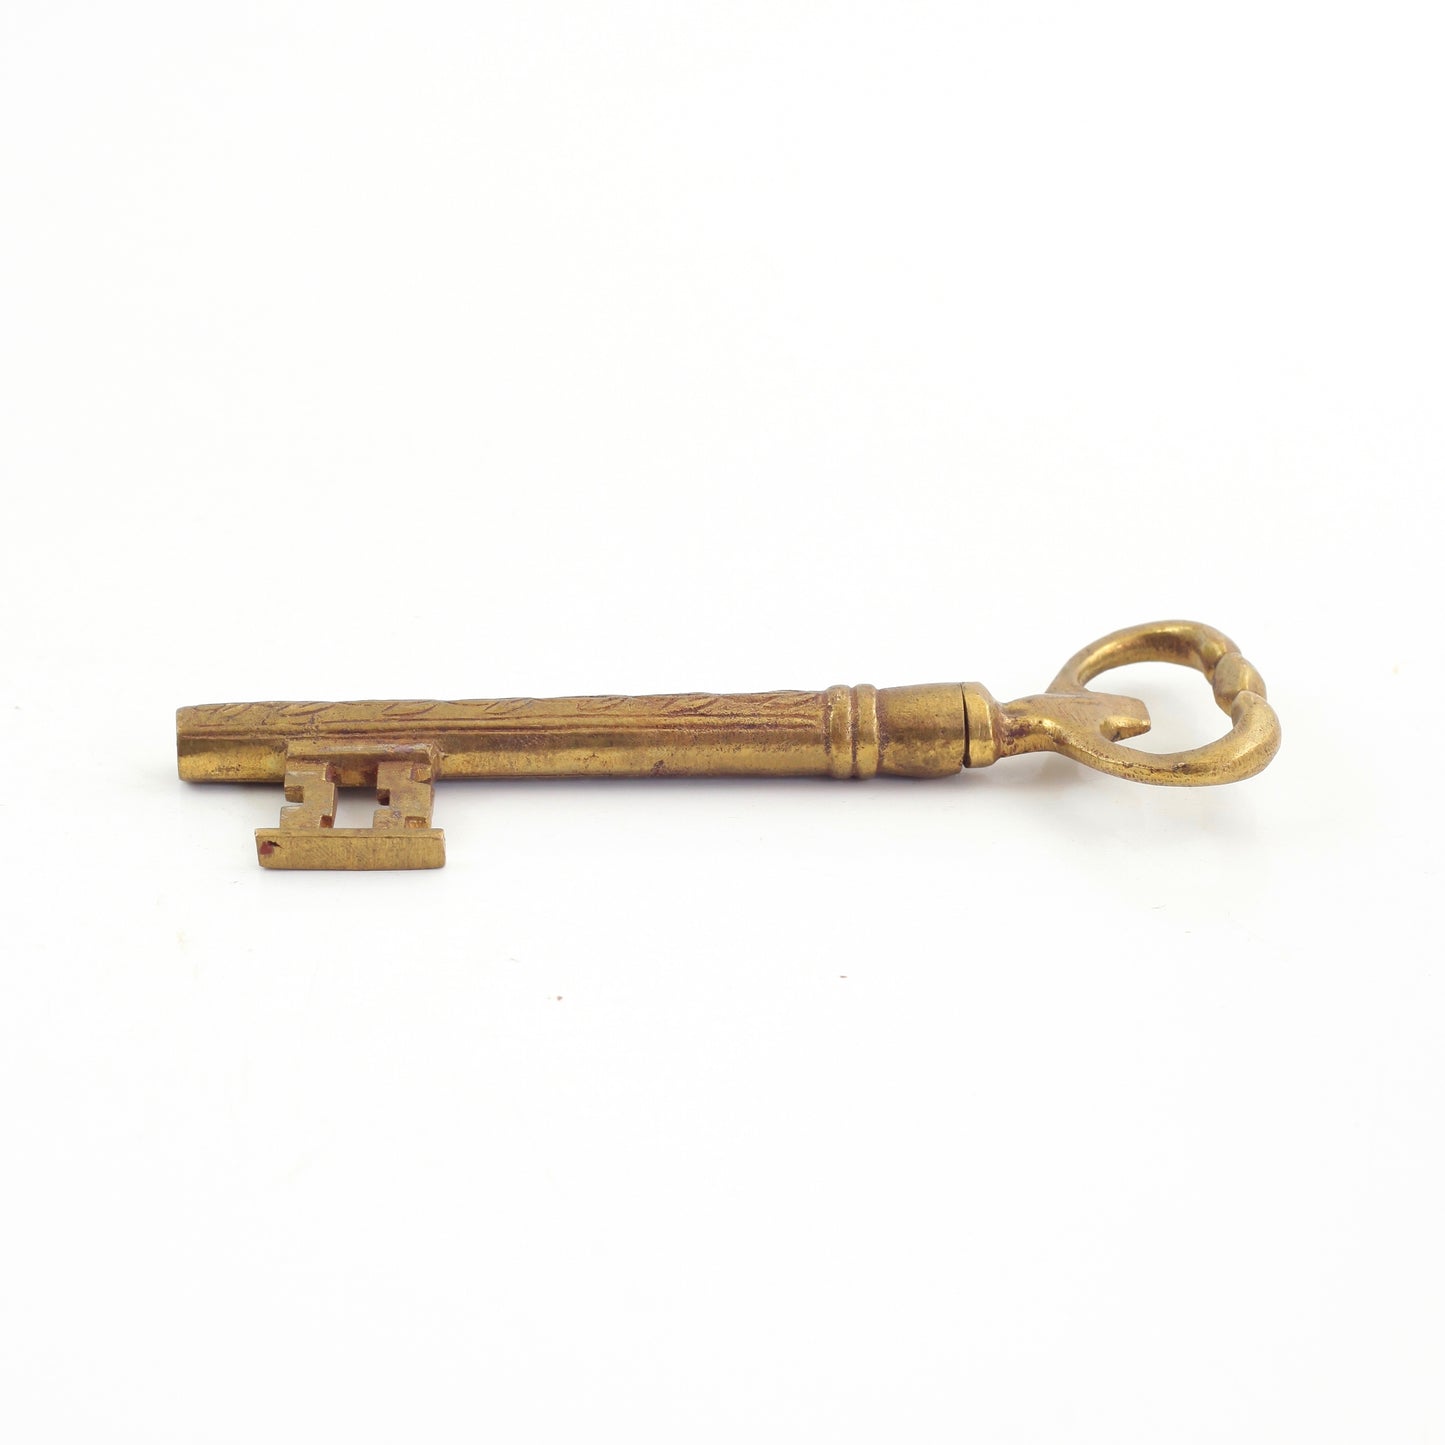 SOLD - Vintage Brass Skeleton Key Corkscrew / Bottle Opener